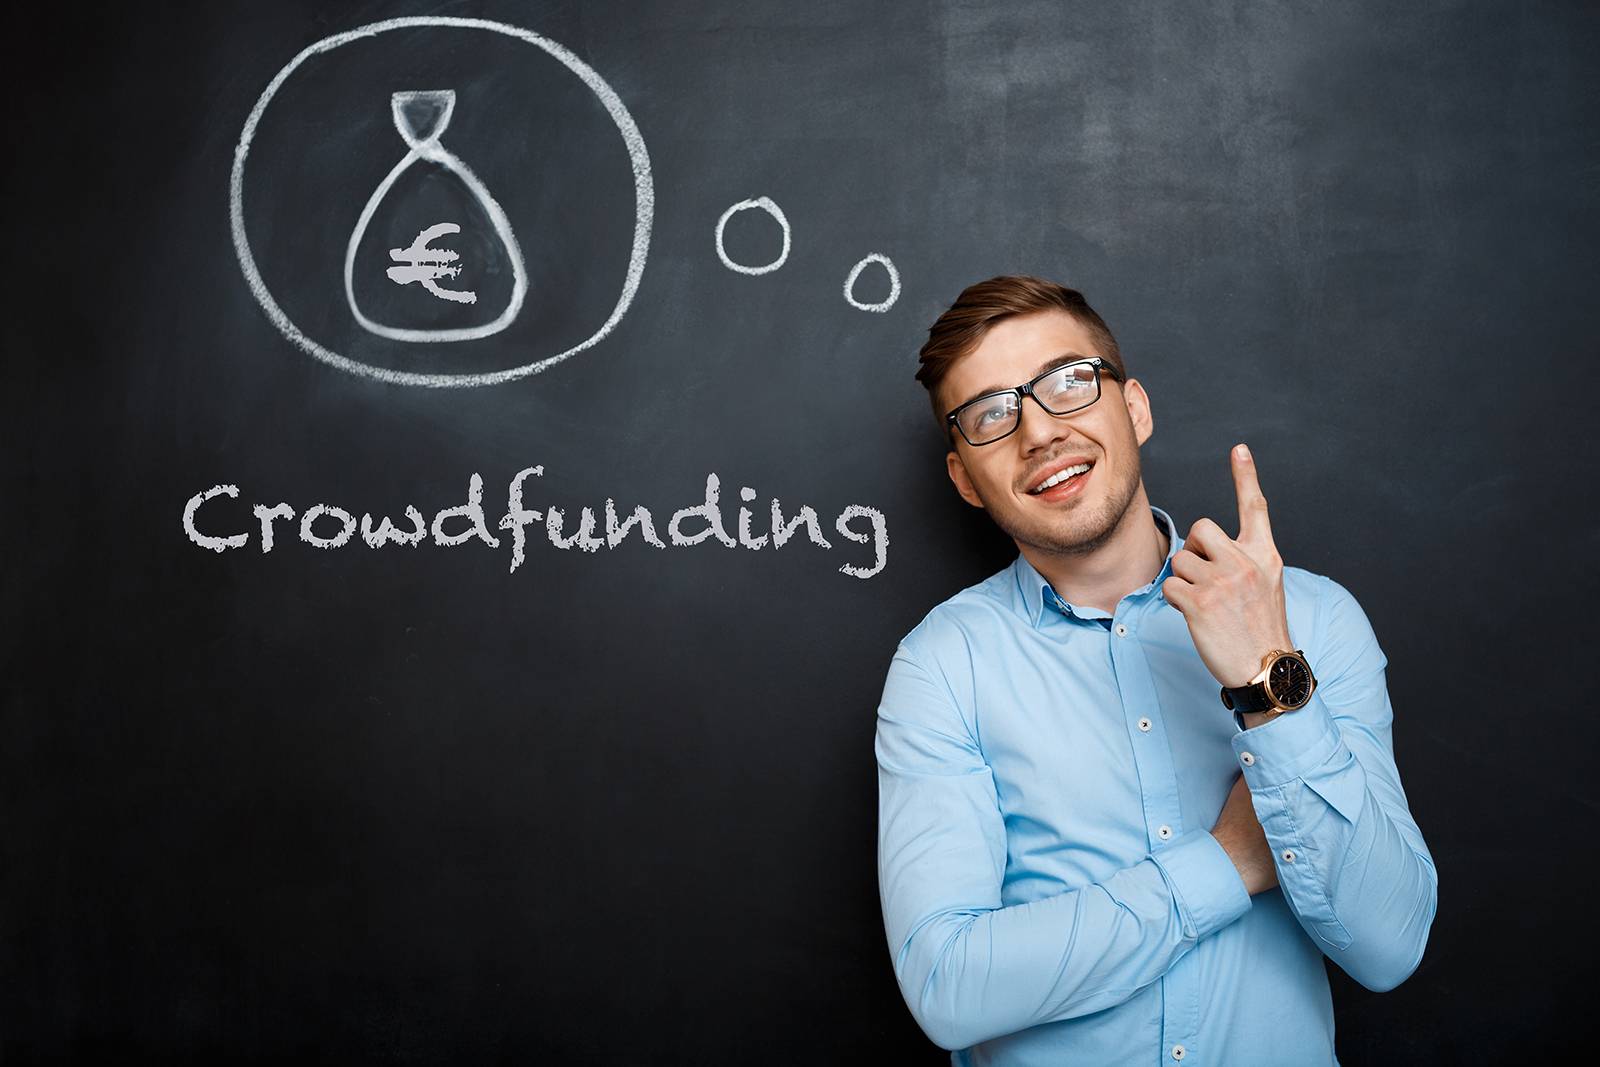 Il ruolo del portale nella campagna di crowdfunding